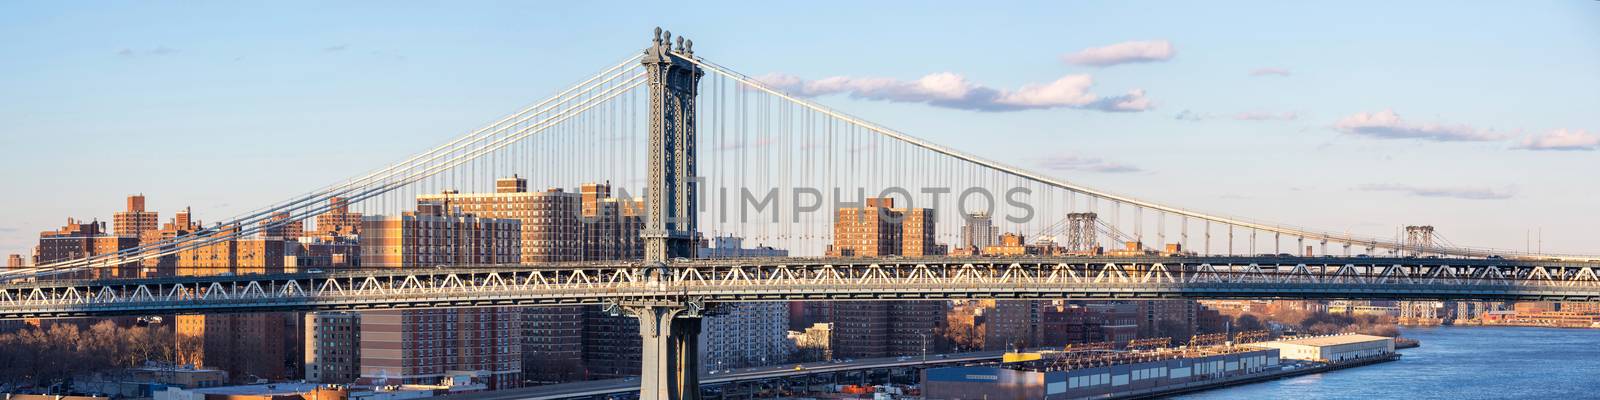 Panorama of Manhattan Bridge by vichie81